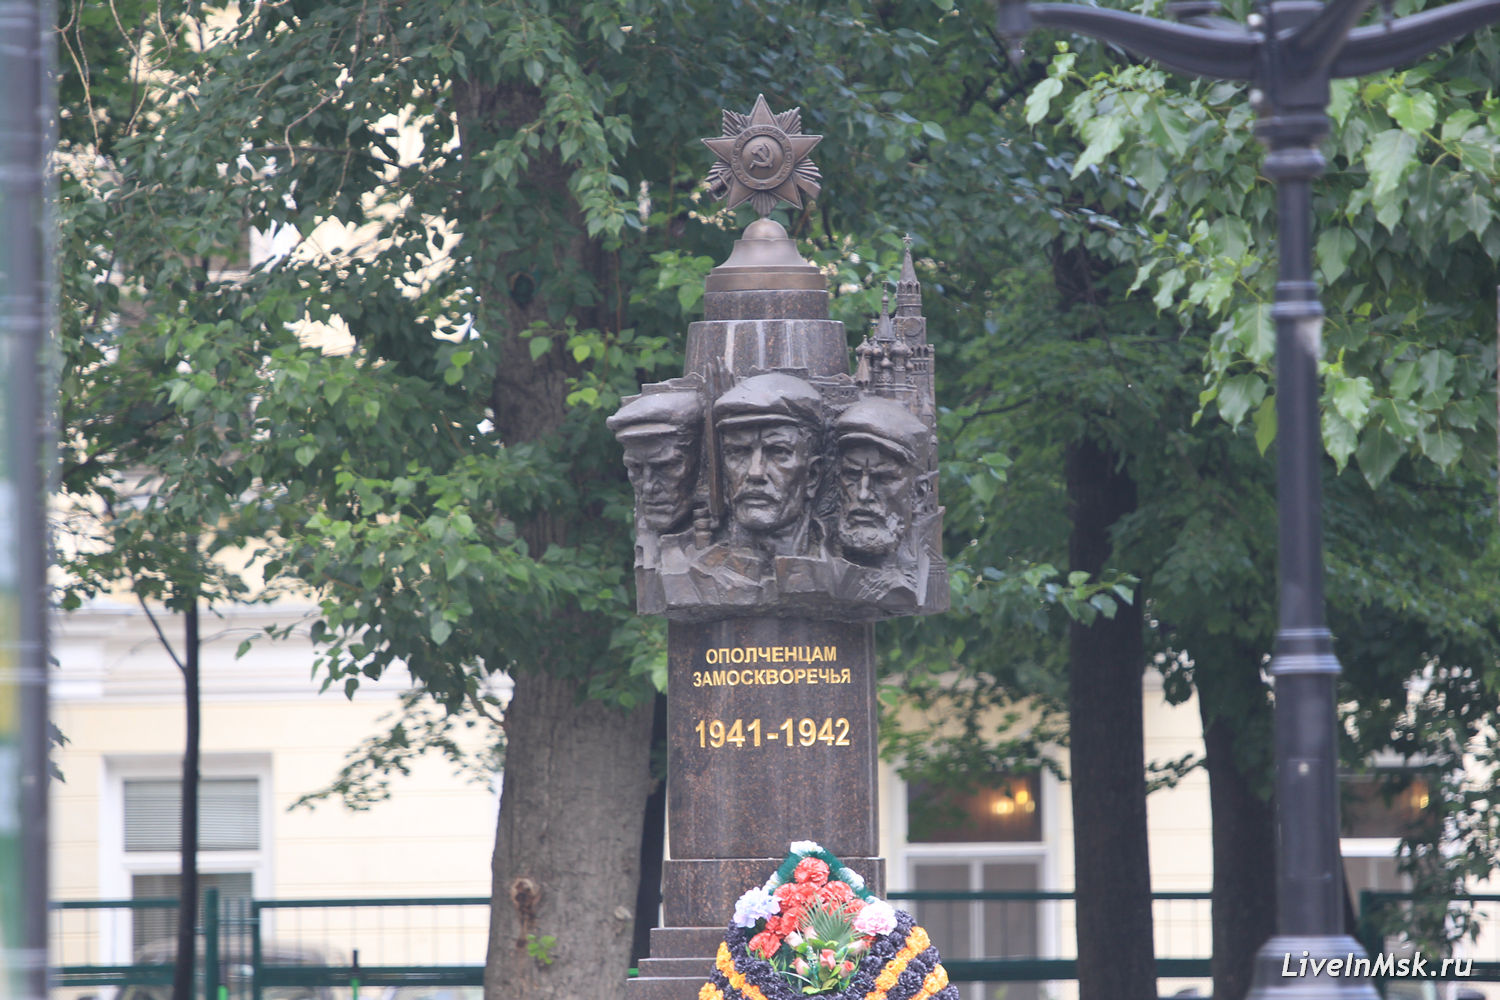 Памятник ополченцам Замоскворечья, фото 2018 года